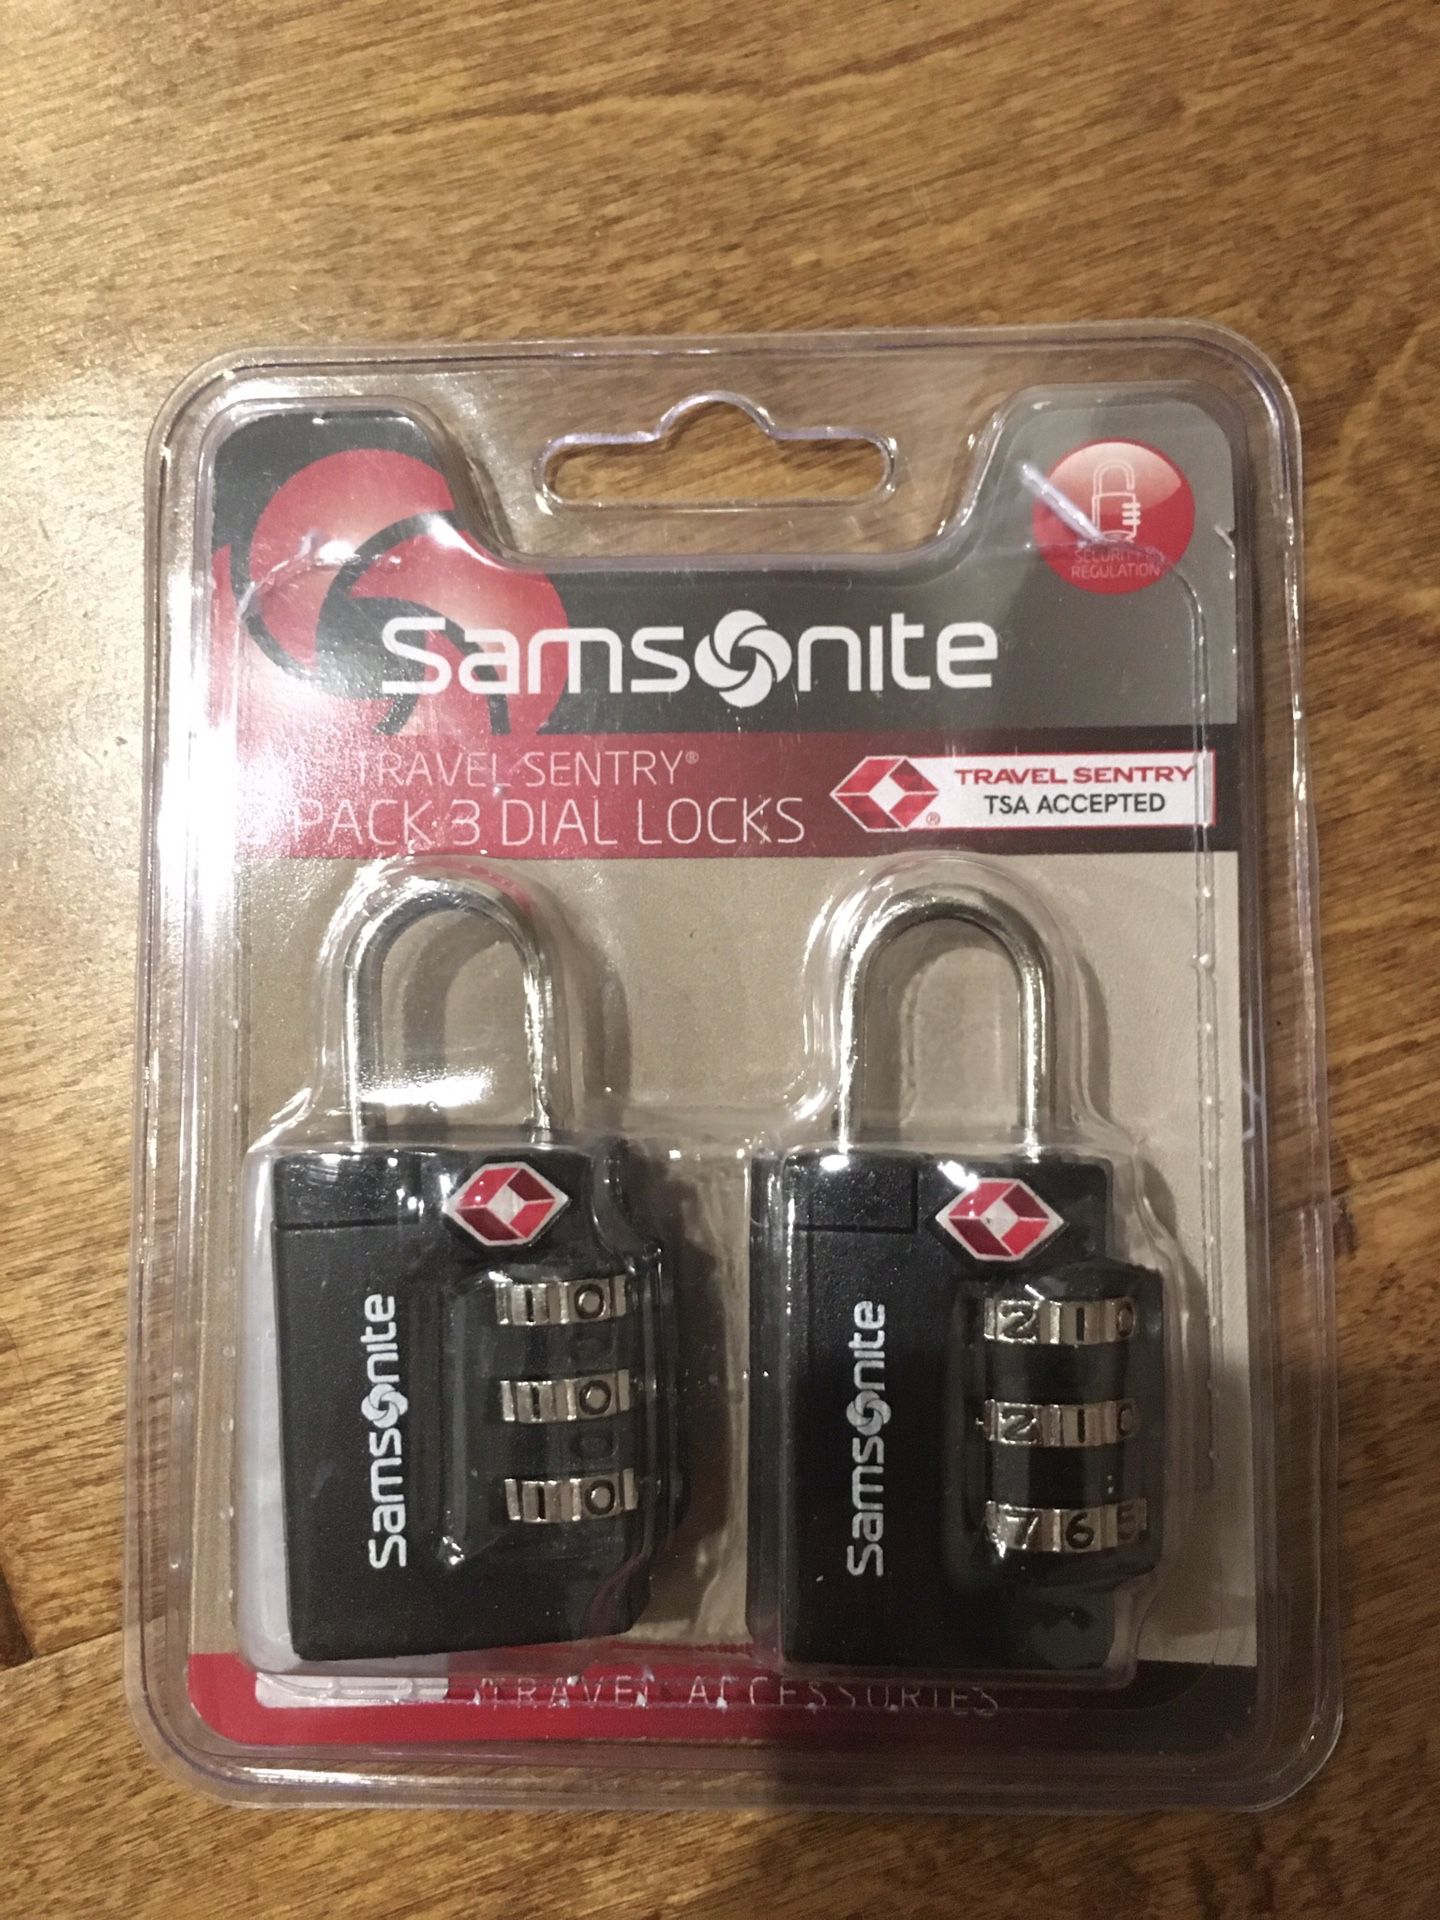 Samsonite locks